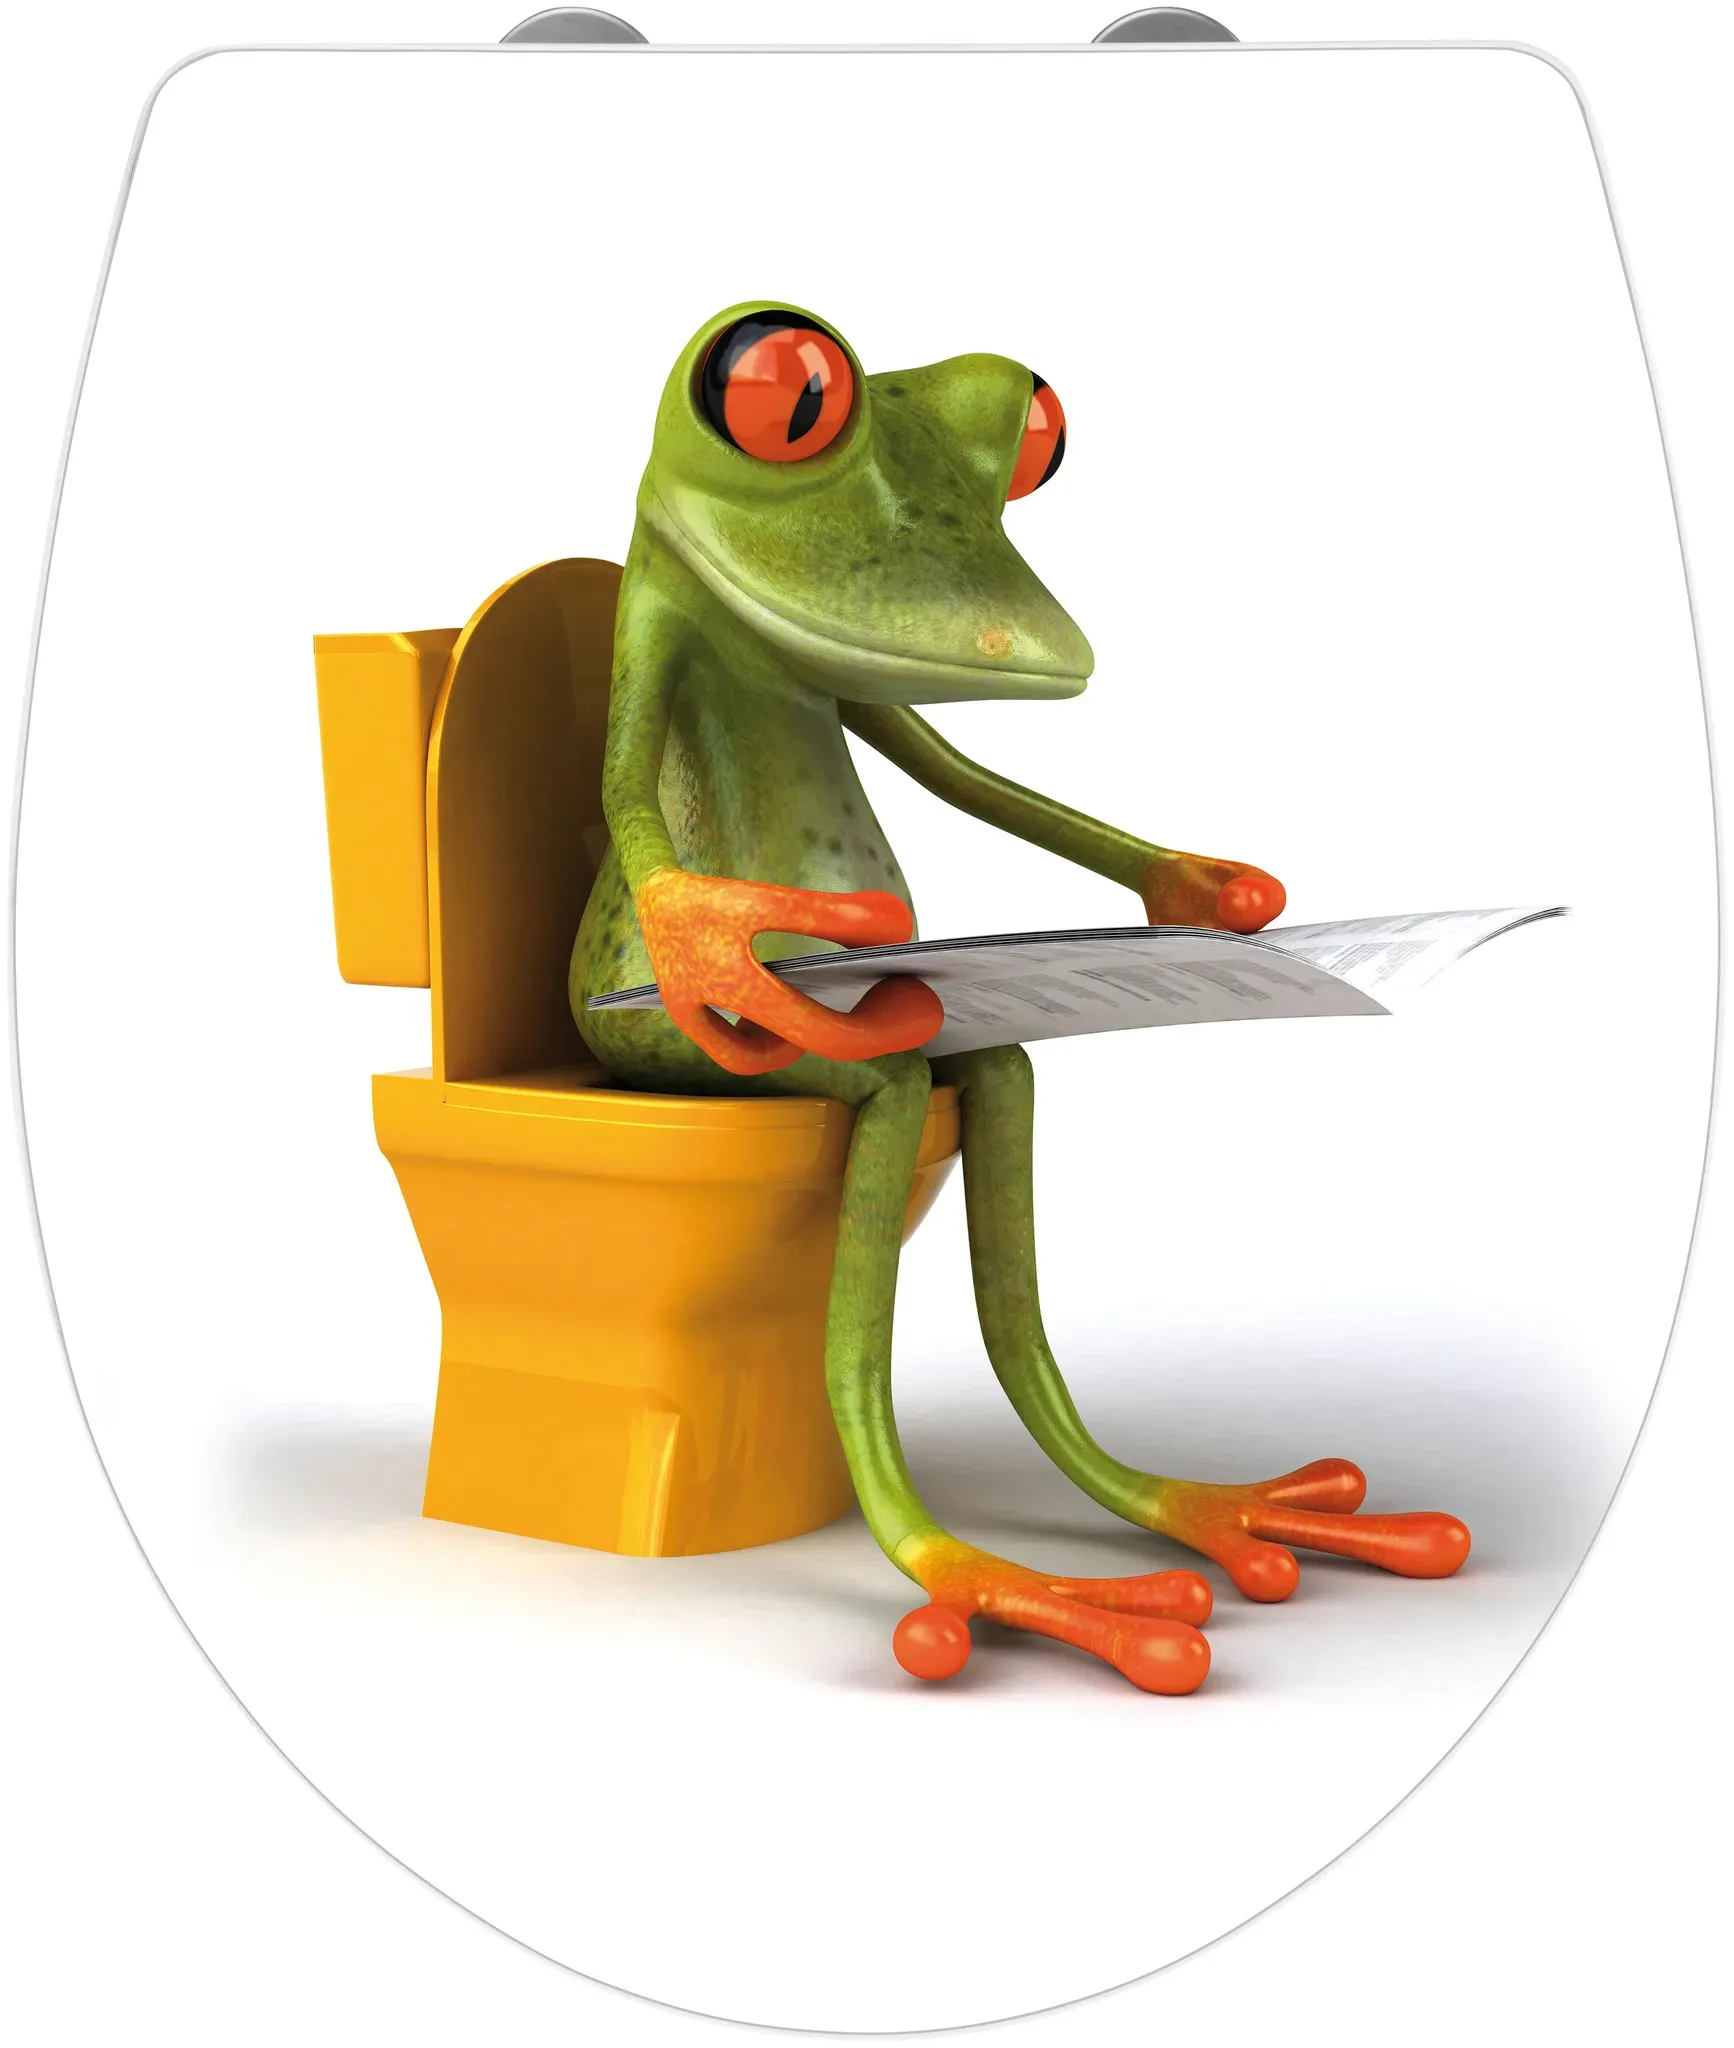 WC-Sitz WENKO "Frog News" WC-Sitze bunt (bunt, weiß) WC-Sitze Mit Absenkautomatik